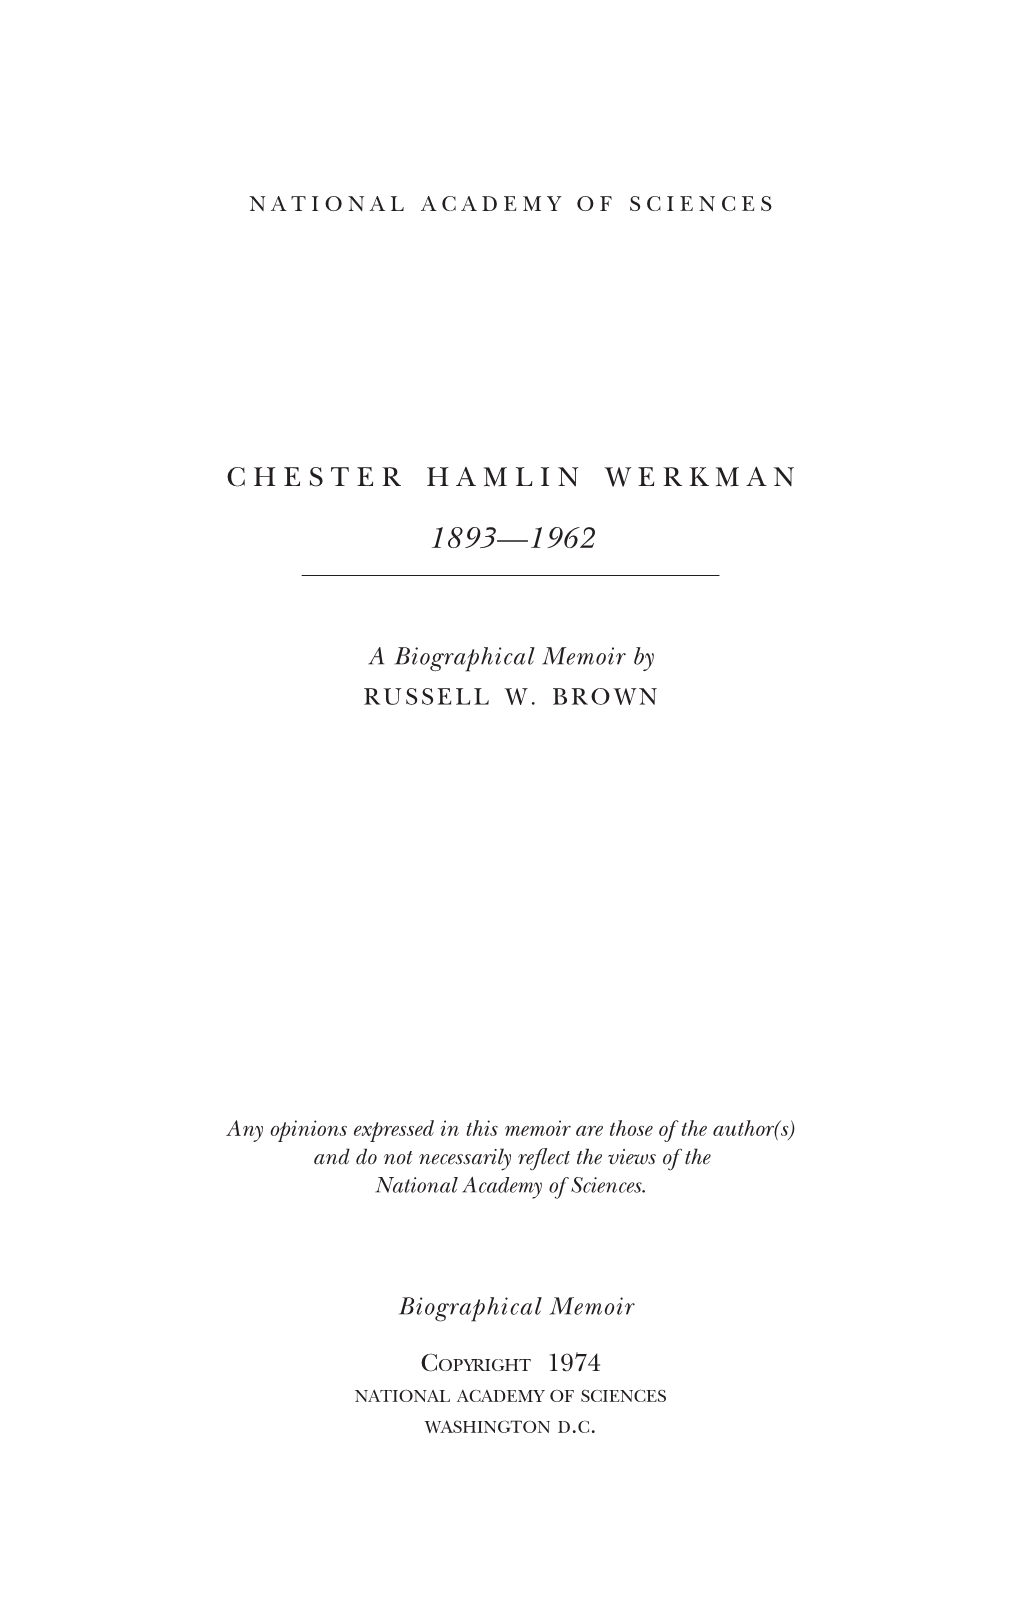 Chester Hamlin Werkman